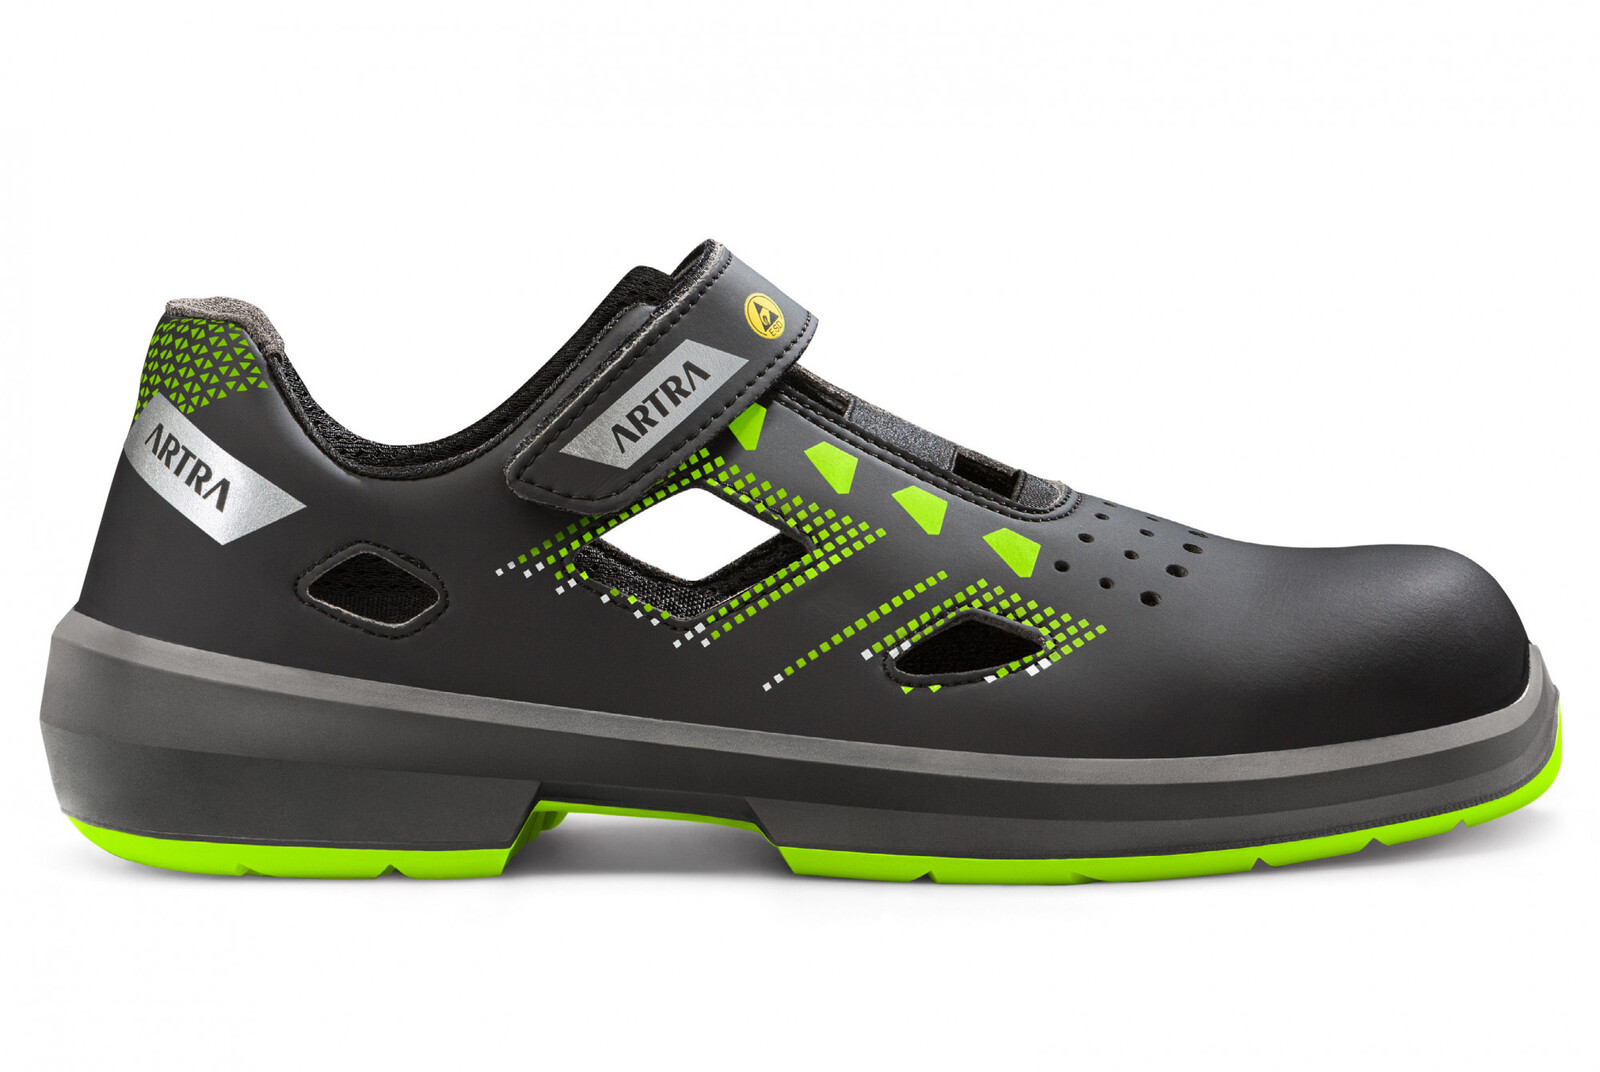 Bezpečnostné sandále Artra Arzo 805 678080 S1P SRC ESD MF - veľkosť: 40, farba: čierna/zelená